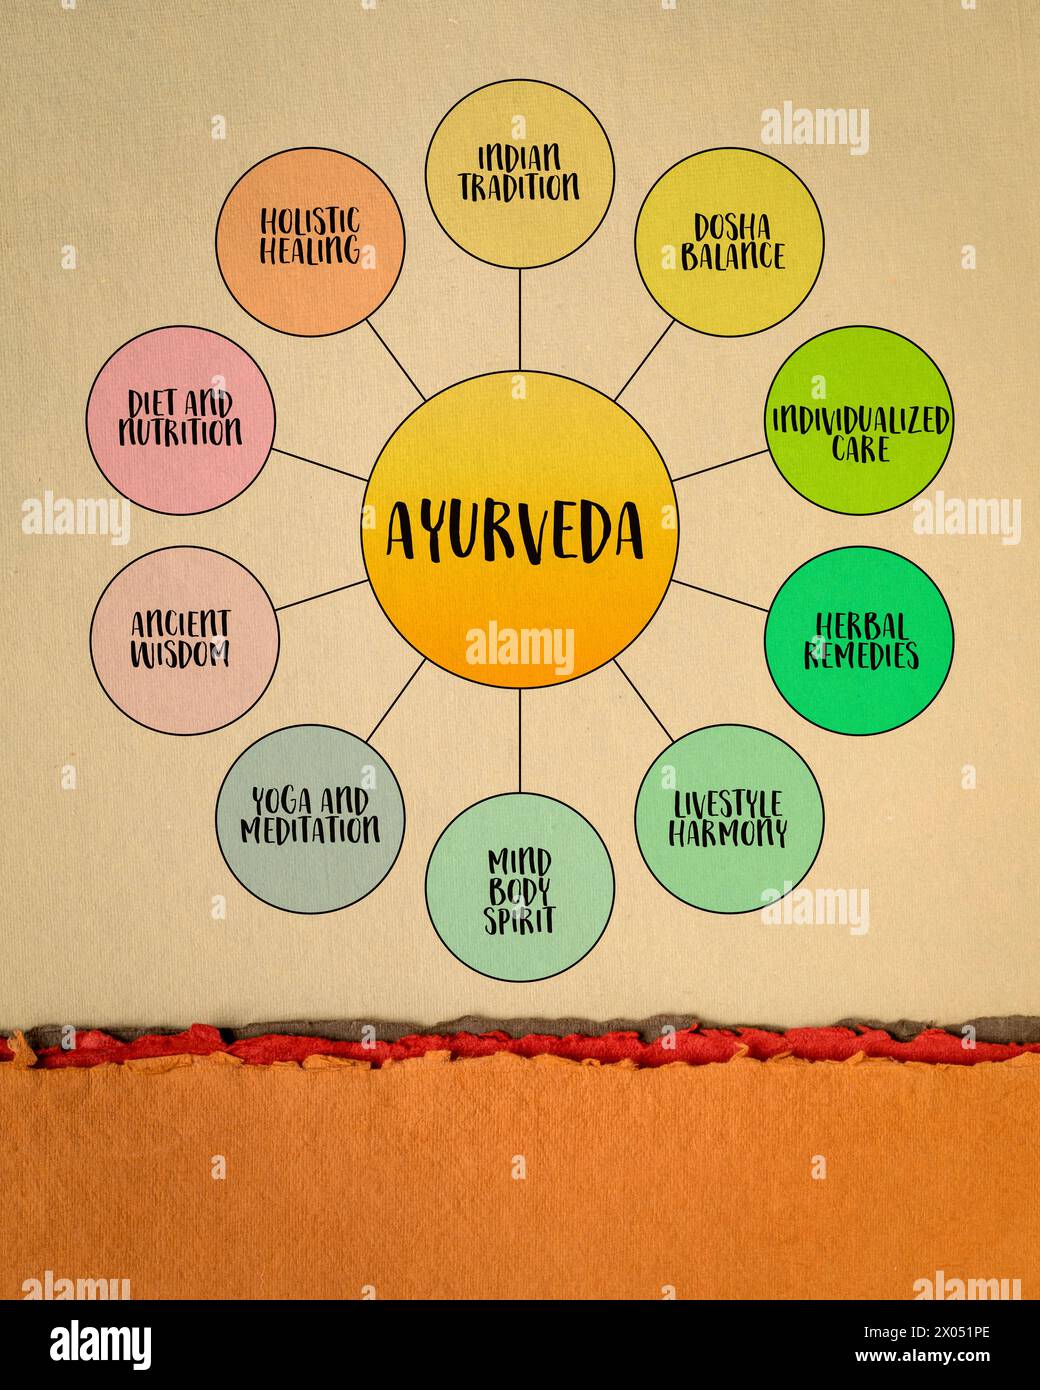 Ayurveda, traditionelle indische Medizin System - Infografiken oder Geist auf Kunstpapier, Gesundheit, Heilung und Lifestyle Konzept Stockfoto